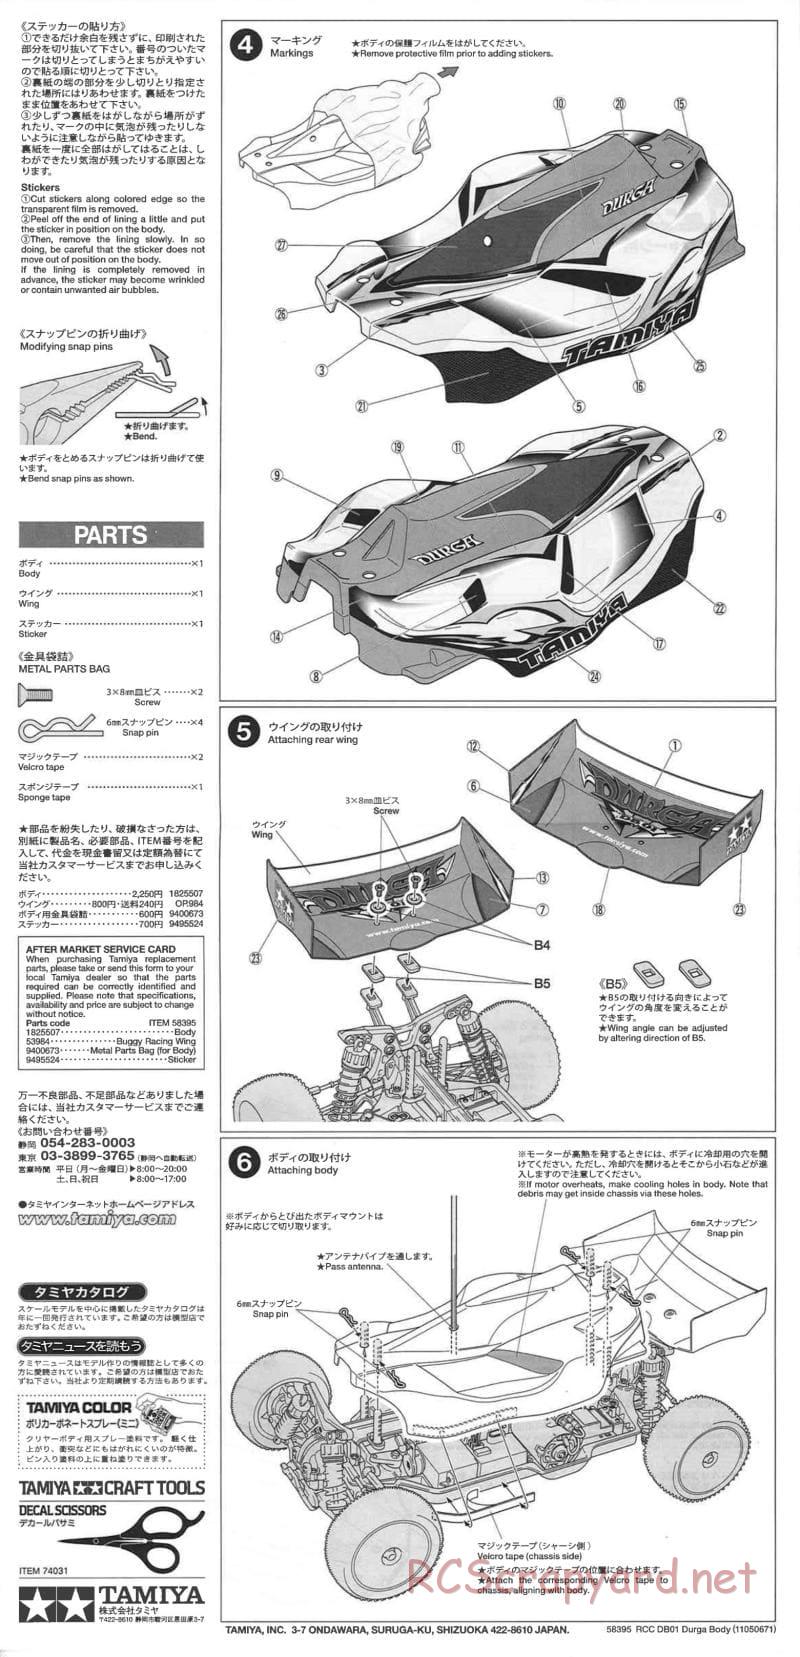 Tamiya - DB-01 Chassis - Manual - Page 26